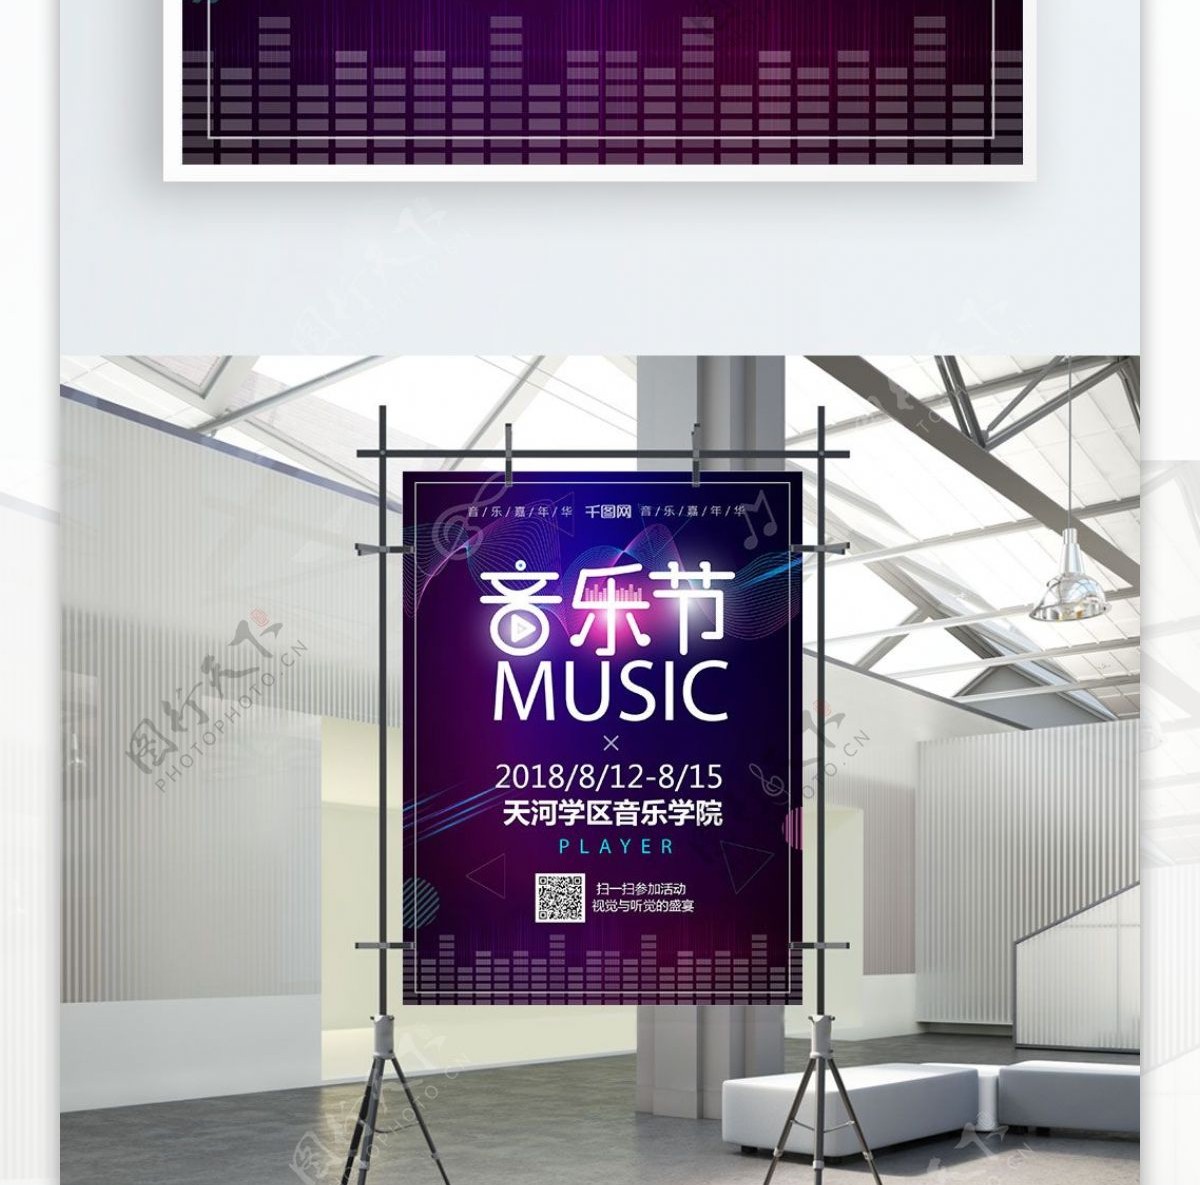 炫酷音乐狂欢节音乐节宣传海报